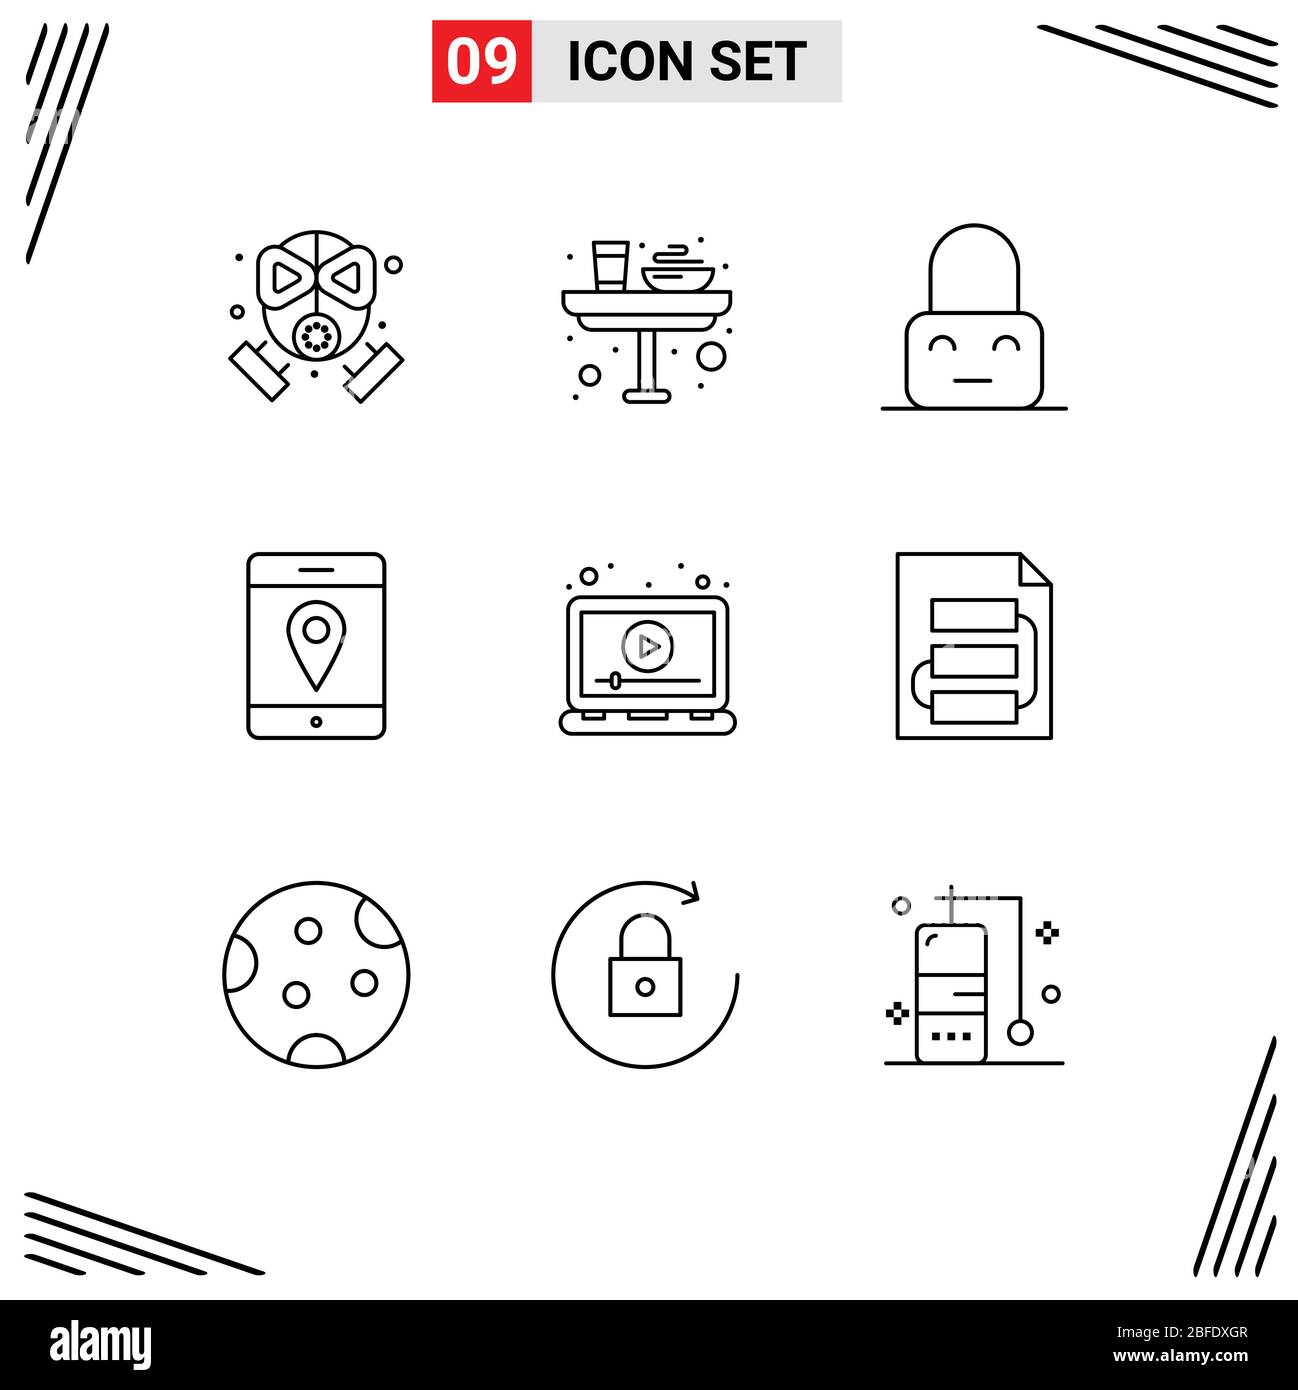 Set di 9 icone moderne dell'interfaccia utente simboli per laptop, mobile, pranzo, mappe, elementi di progettazione vettoriale modificabili parentali Illustrazione Vettoriale